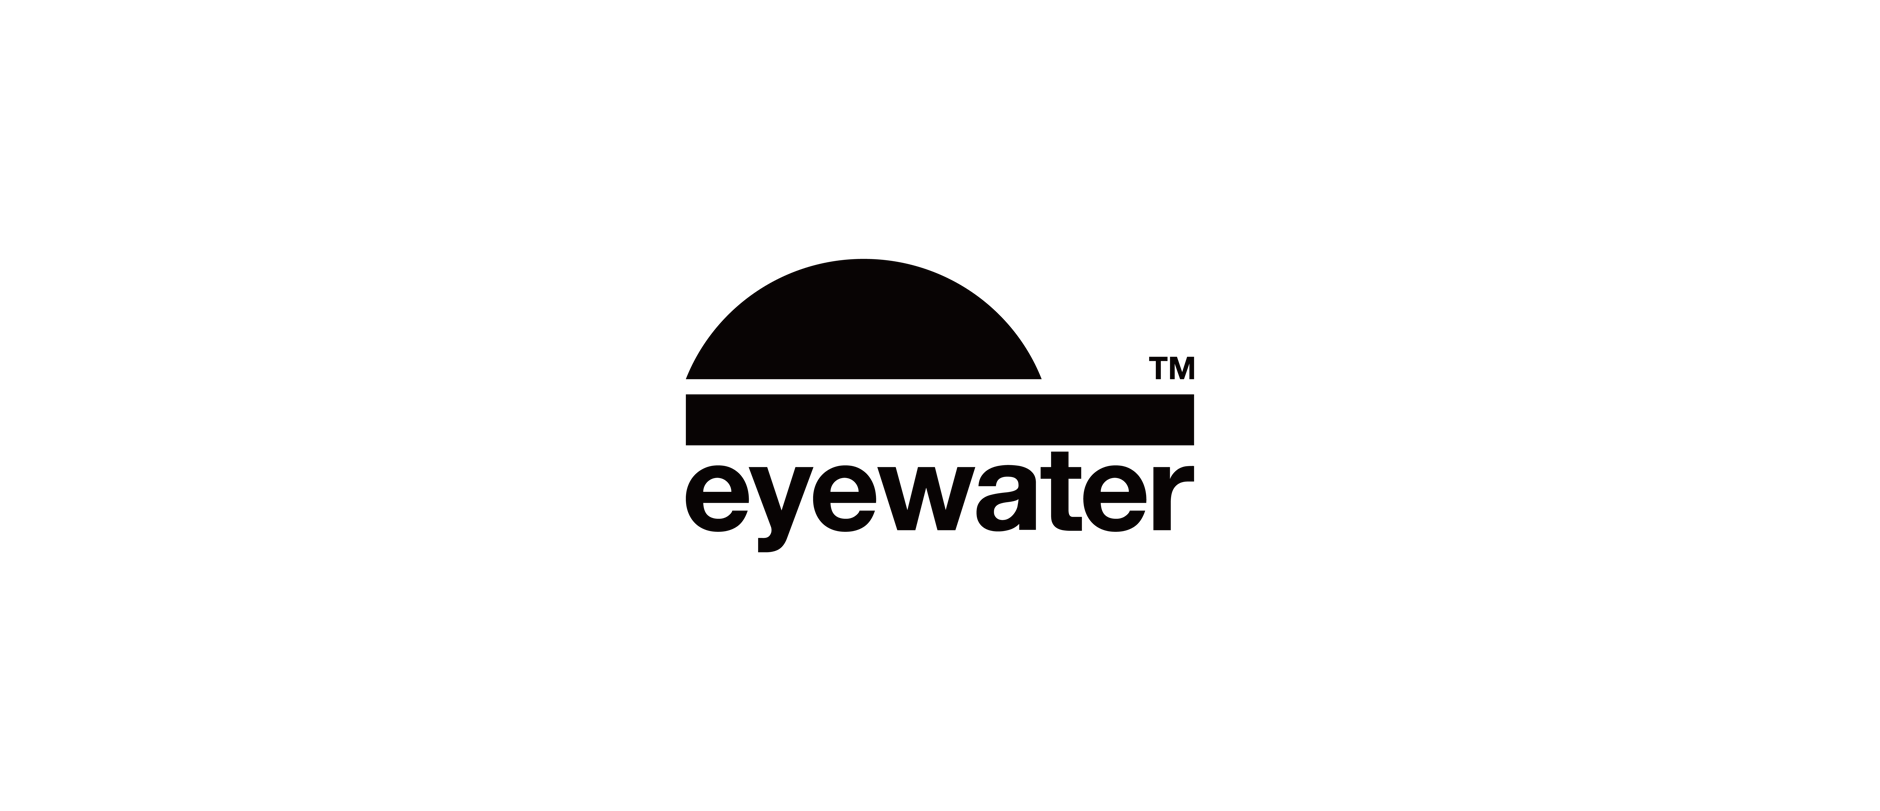 eyewater 